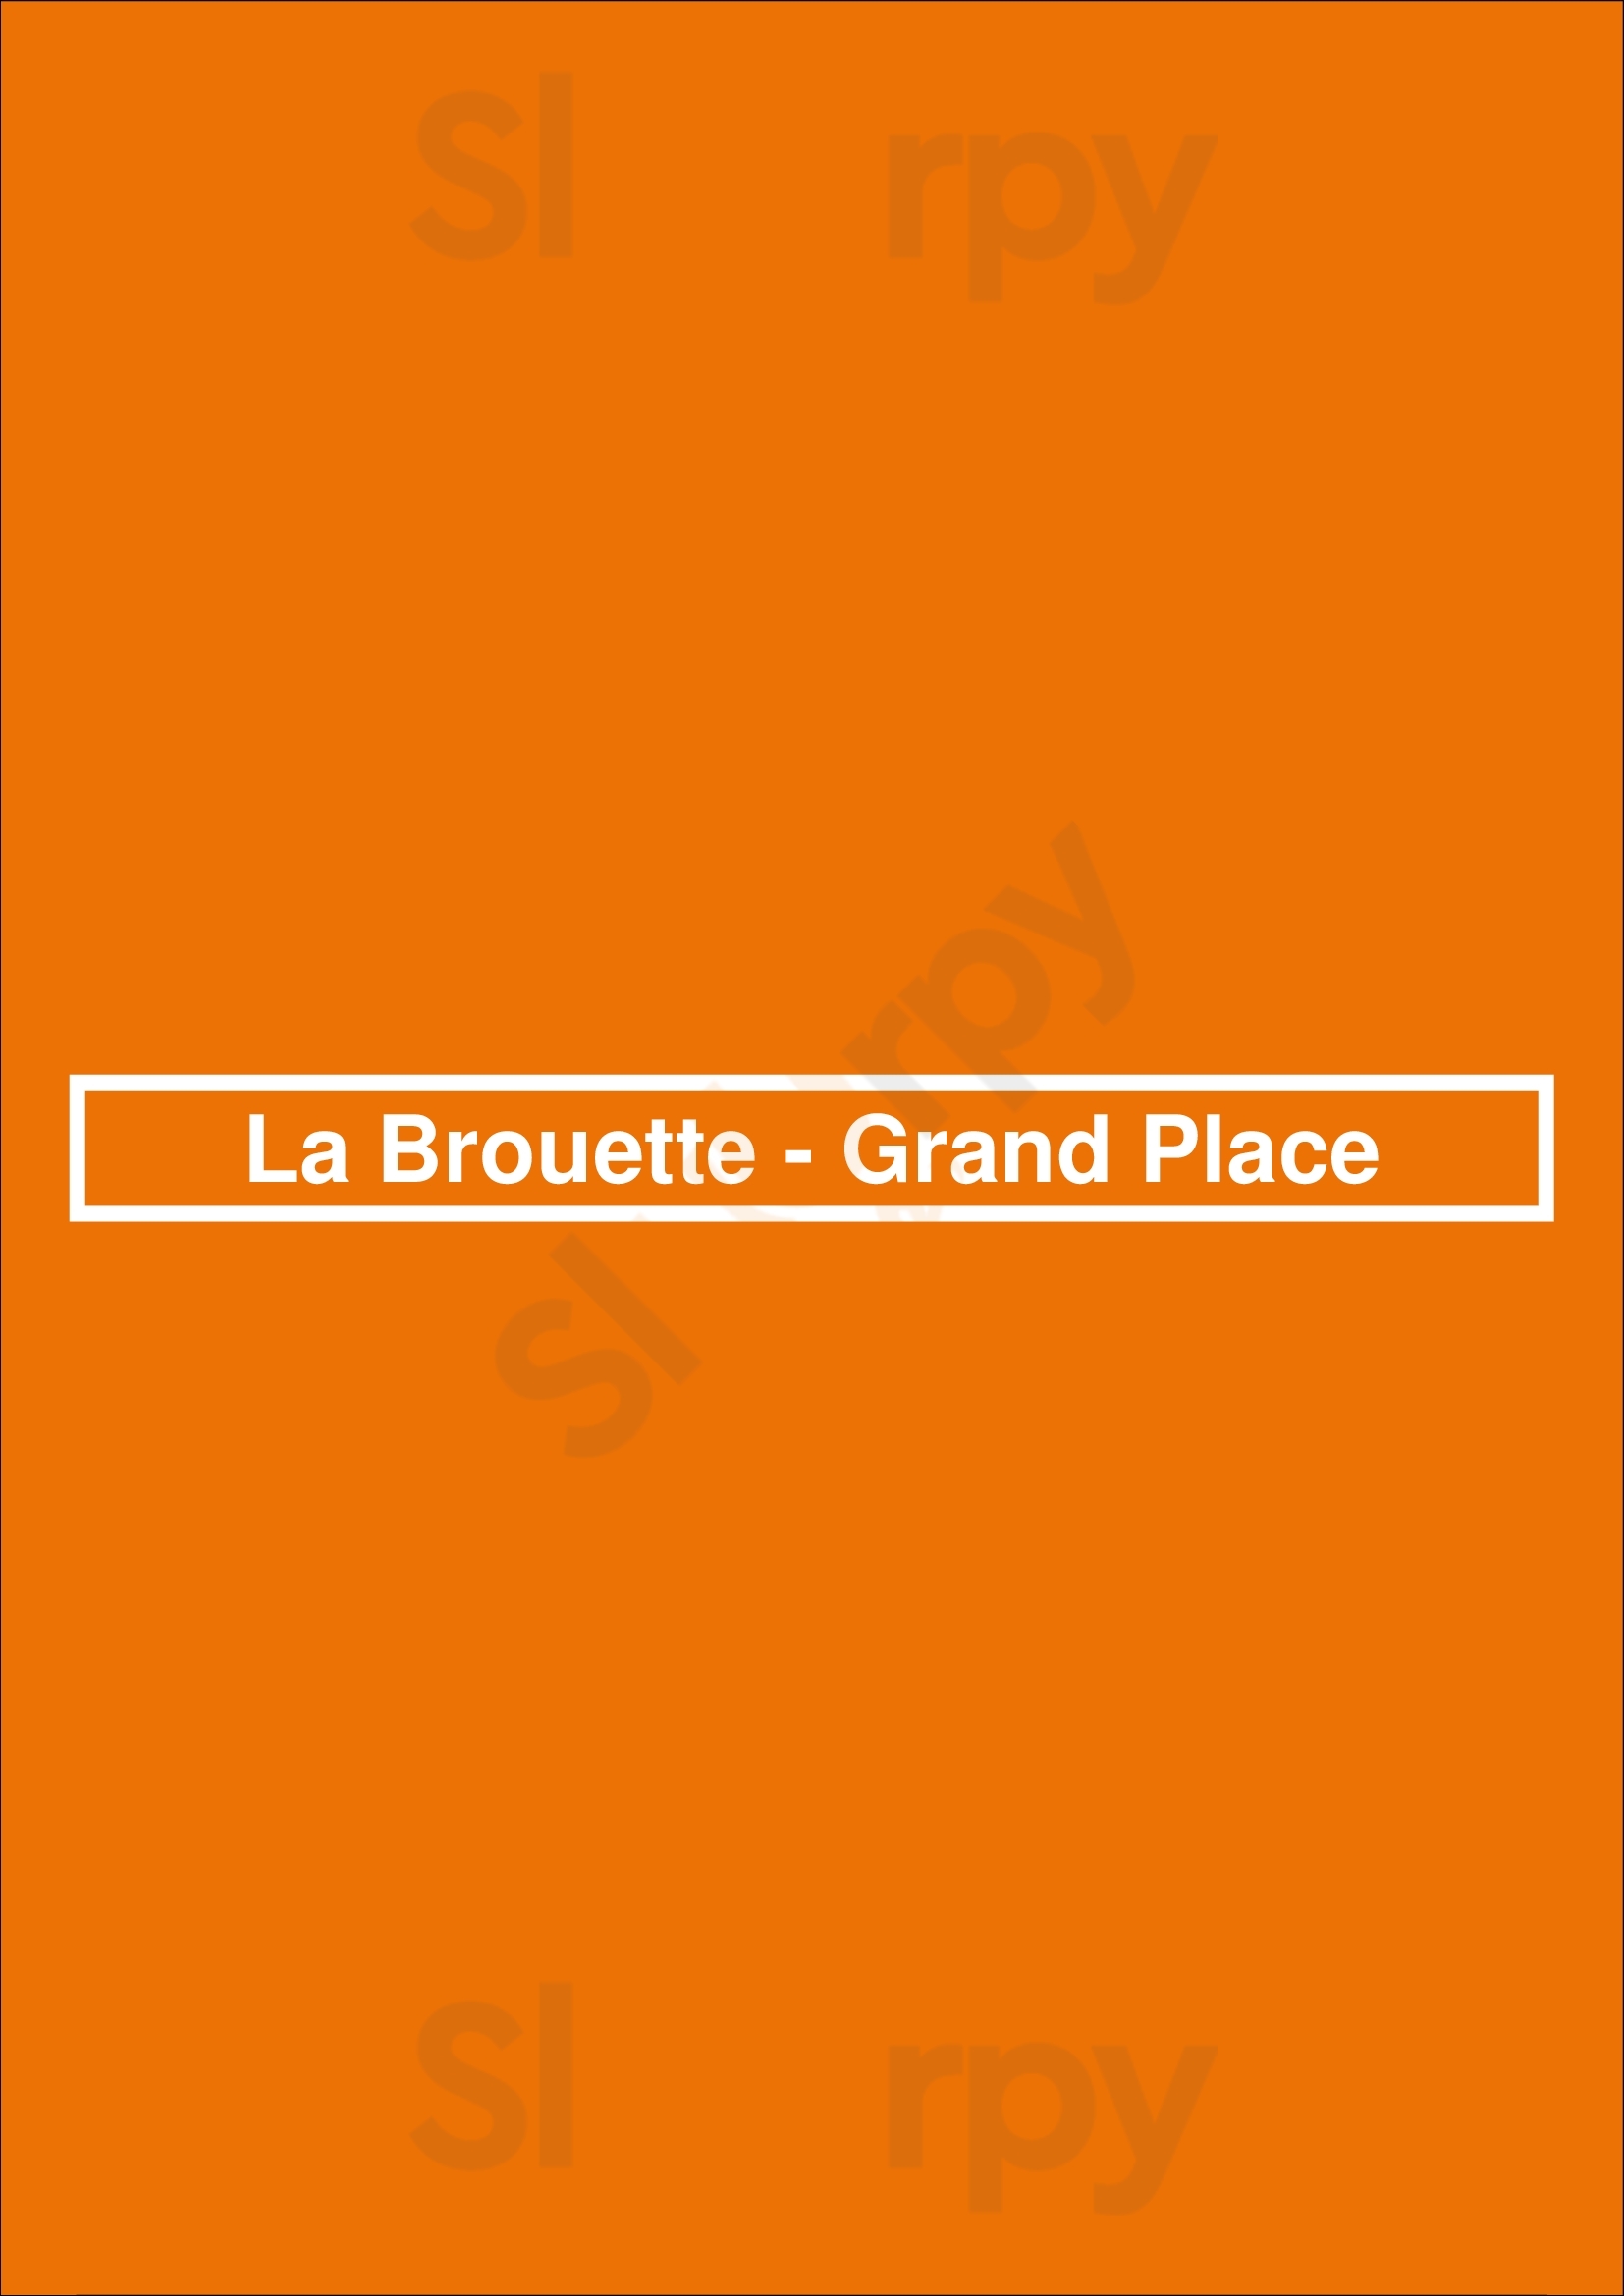 La Brouette - Grand Place Bruxelles Menu - 1